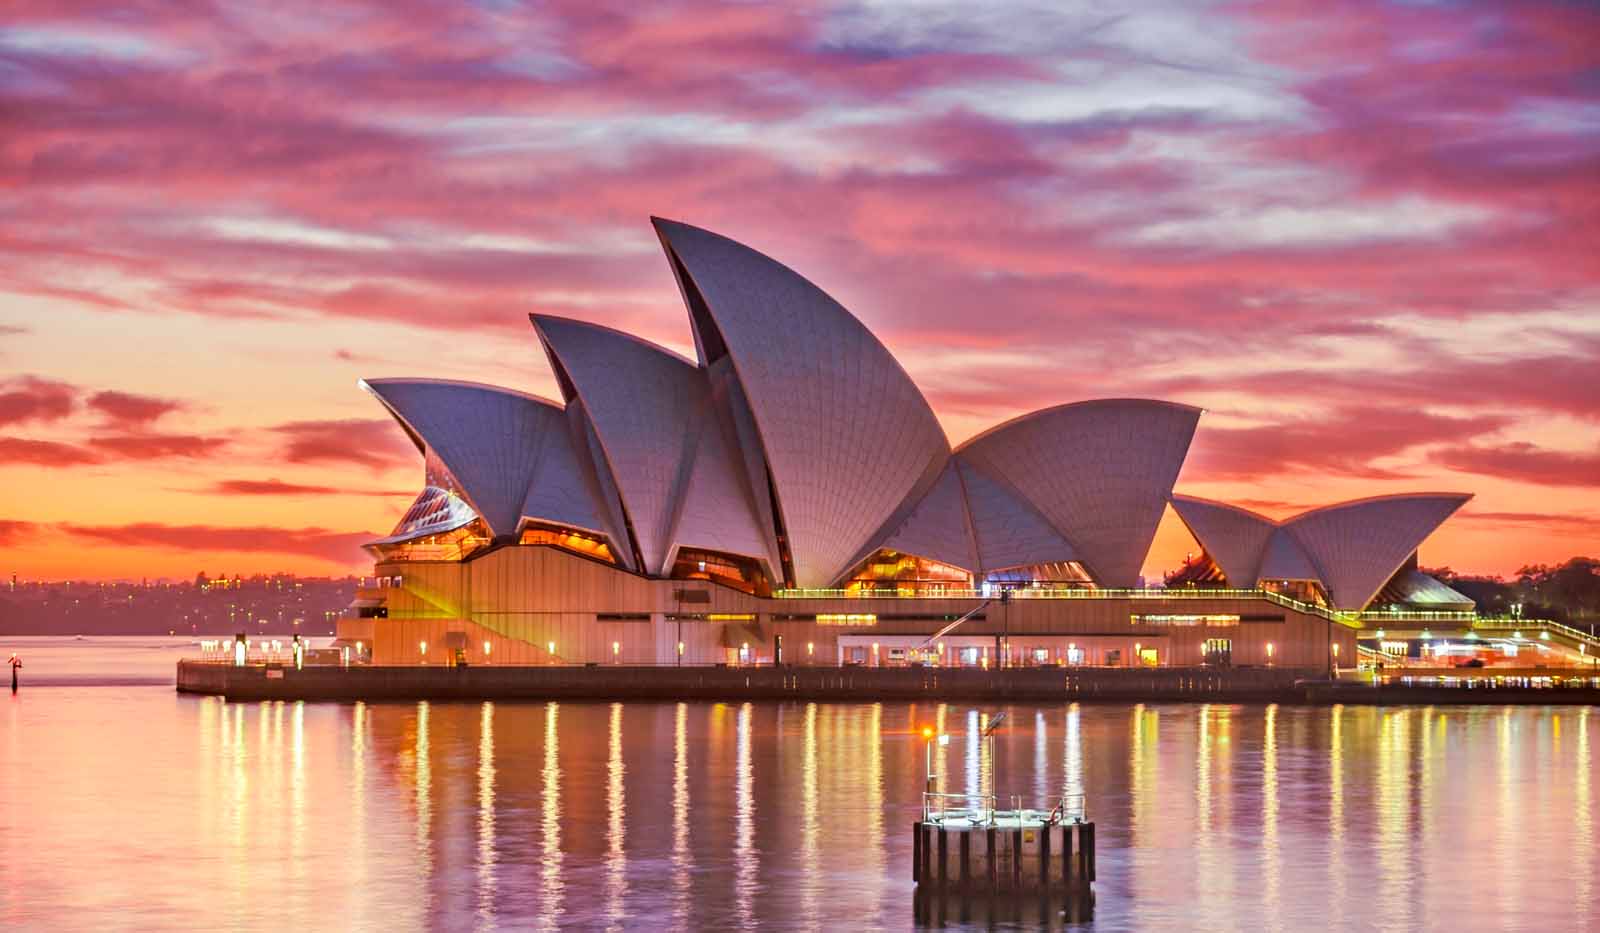 New South Wales Sehenswürdigkeiten Australien Sydney